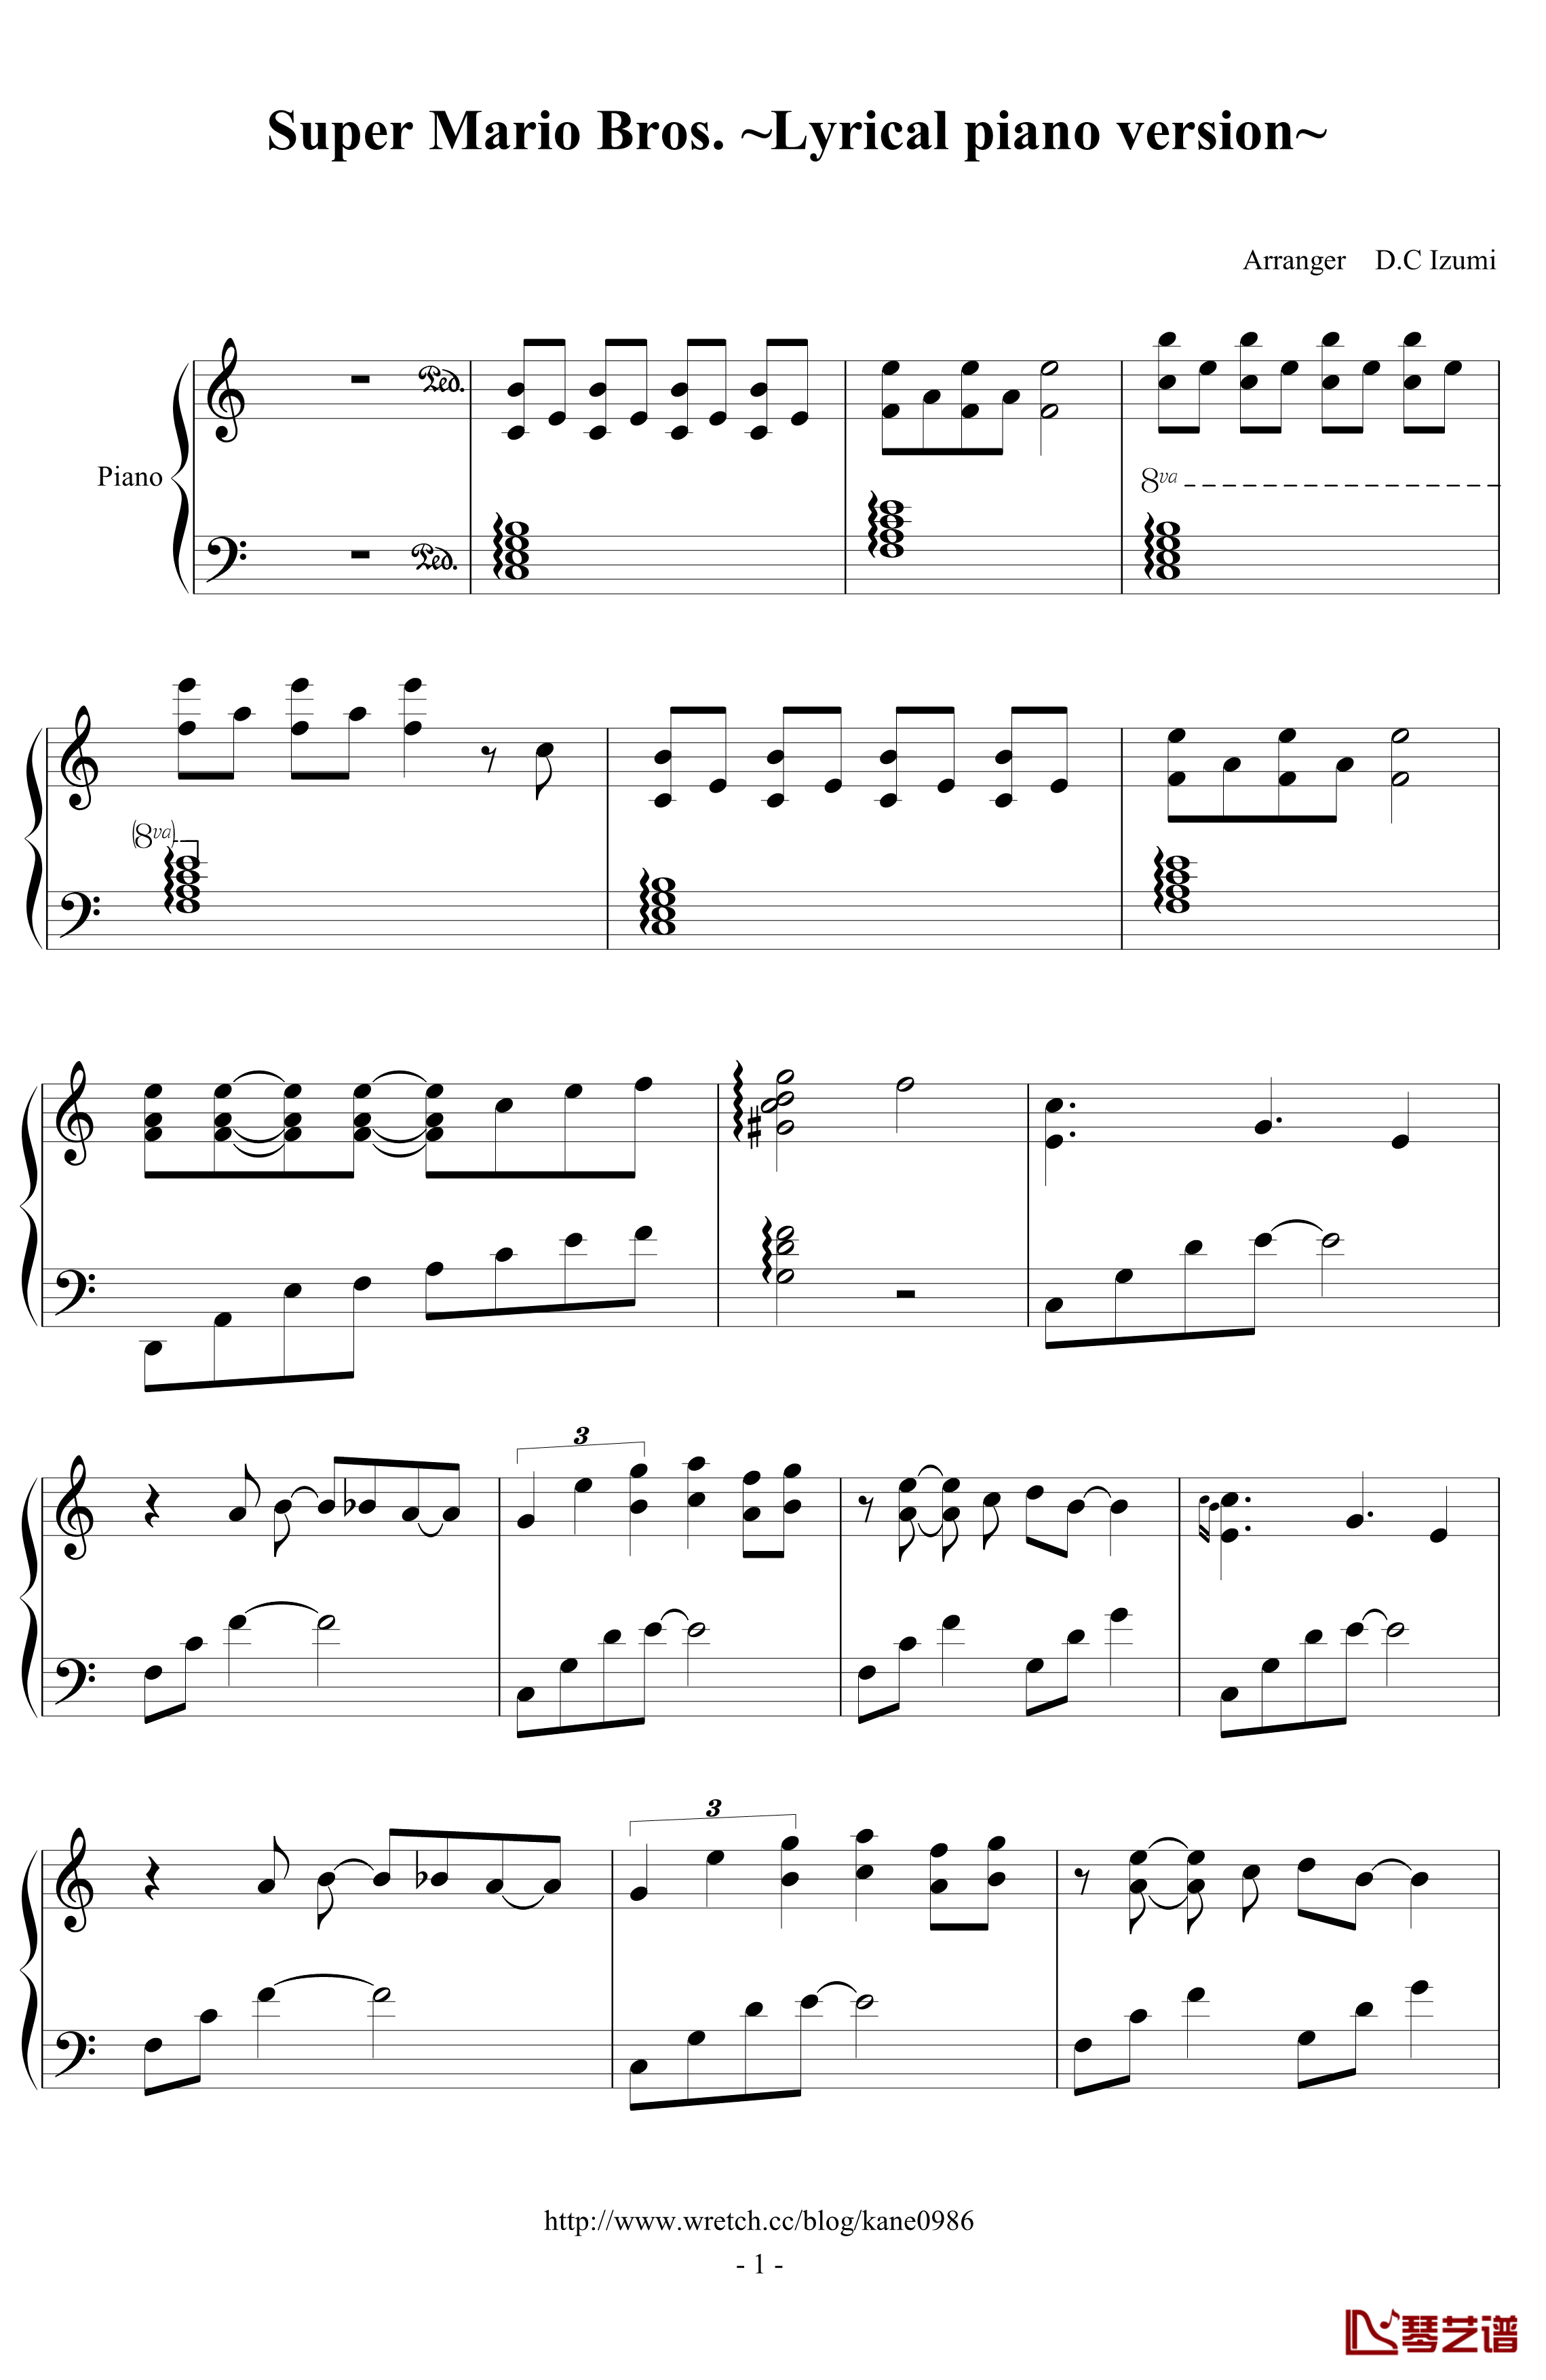 超級瑪利歐钢琴谱-超級抒情版-超级玛莉1